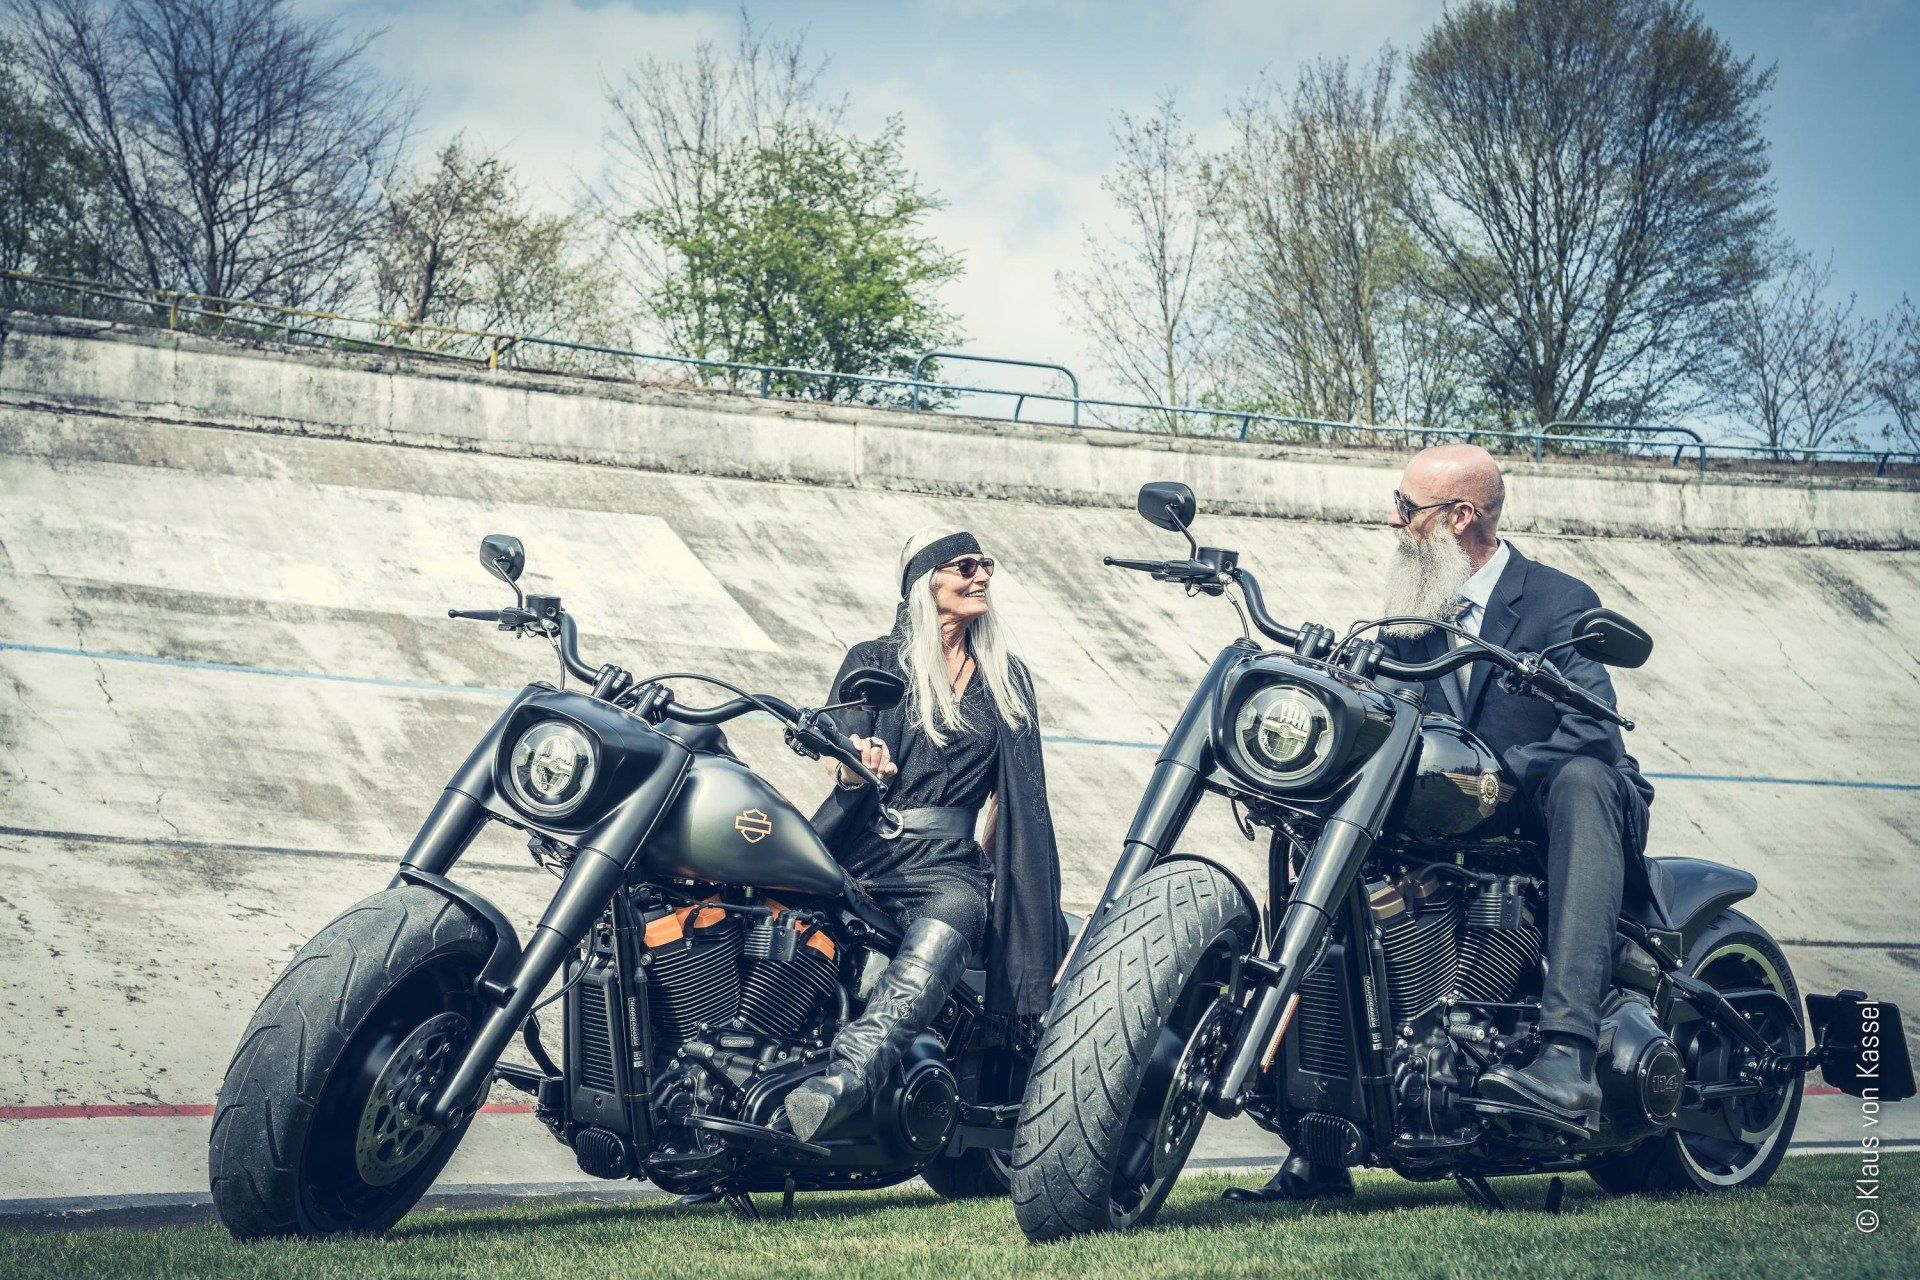 Model Barbara Radke und Christophe Larsson auf zwei Harley Davidson Motorrädern in der Radrennbahn Bielefeld